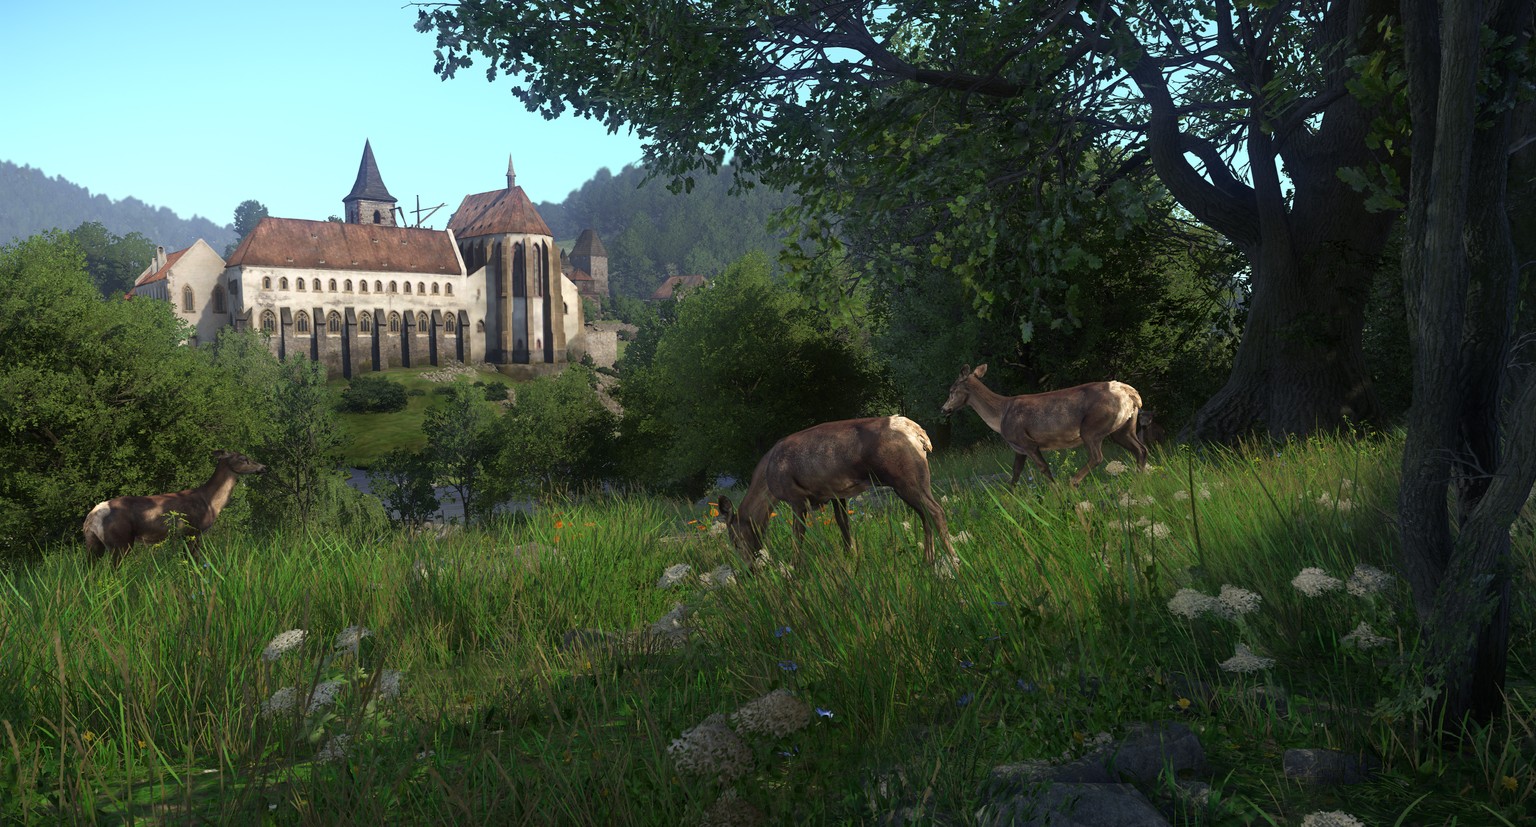 Schöne Landschaften und süsse Tiere. Doch das Ziel bleibt die Burg.